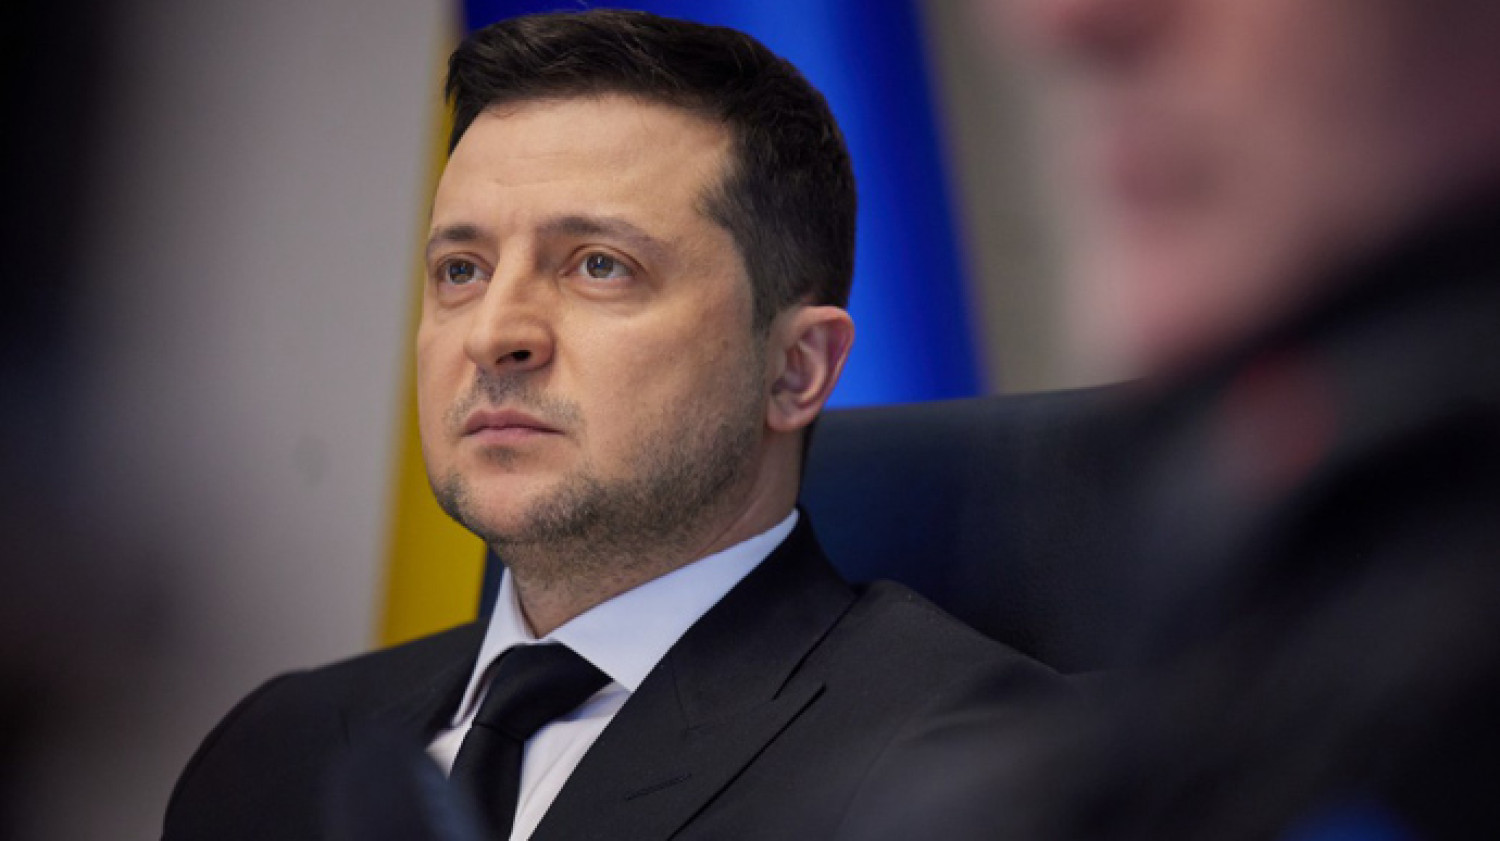 Tổng thống Zelensky đe dọa sa thải tỉnh trưởng Odessa và một số tỉnh trưởng khác